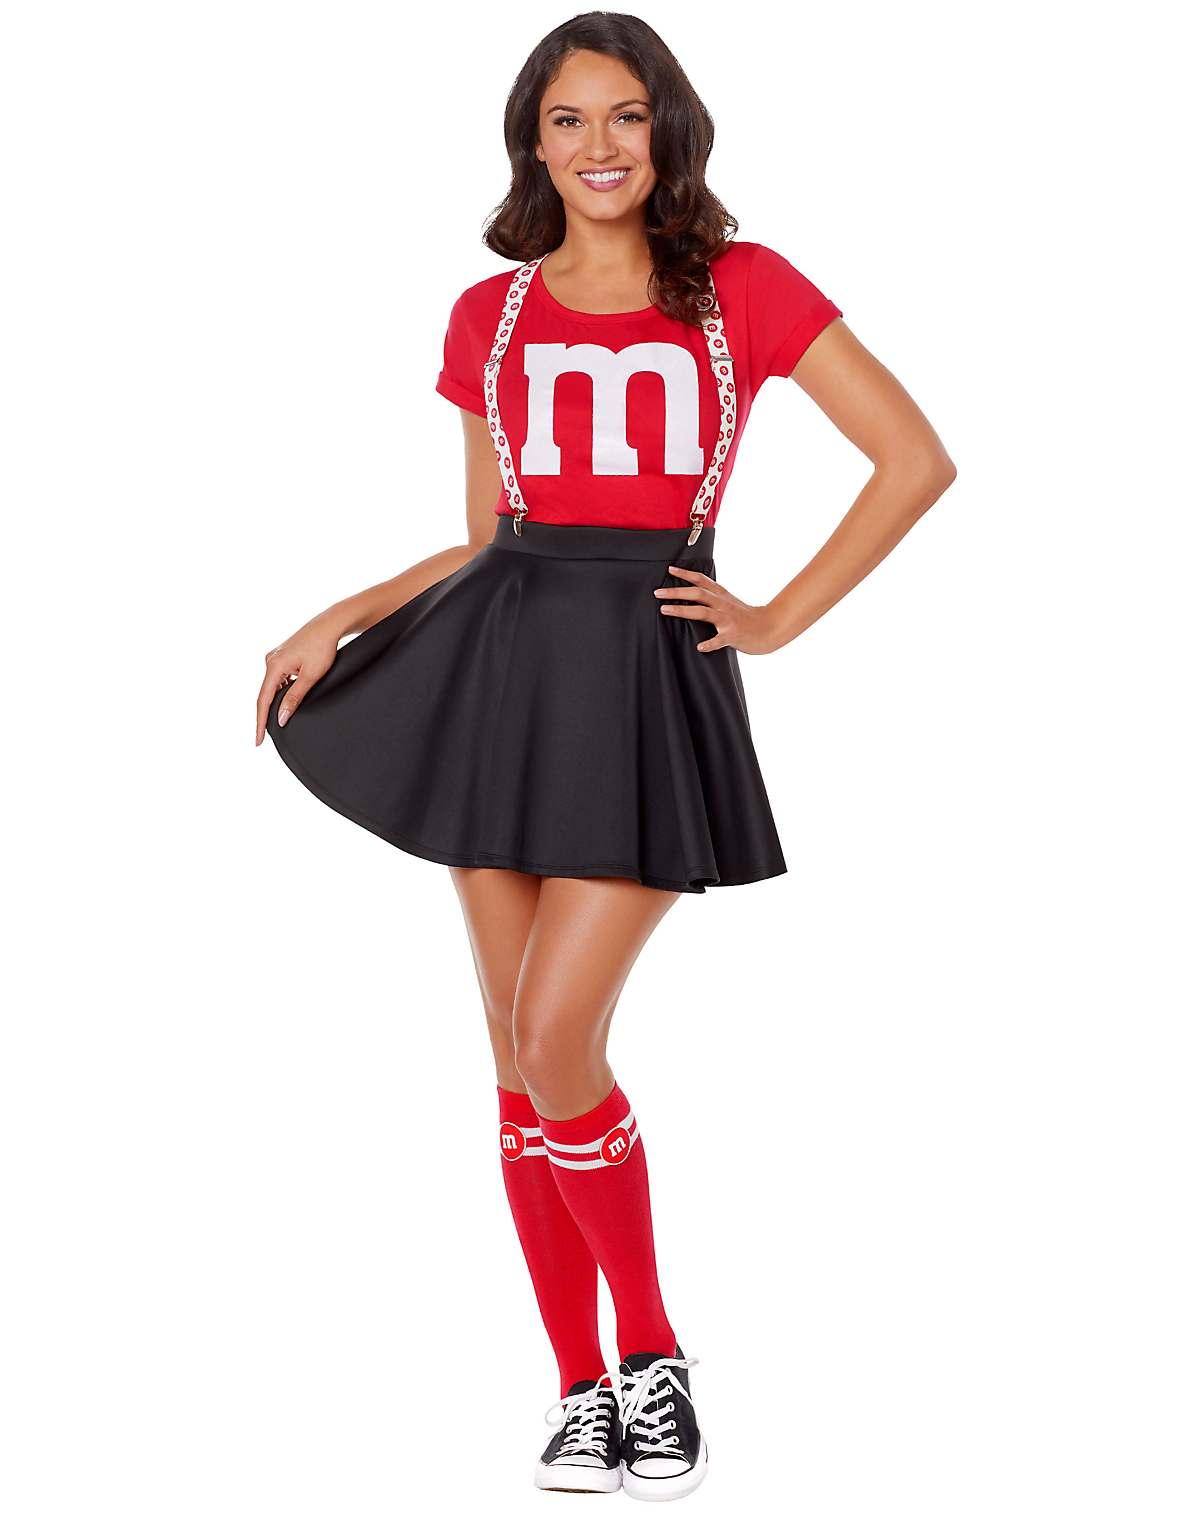 Women's Red M&M Costume